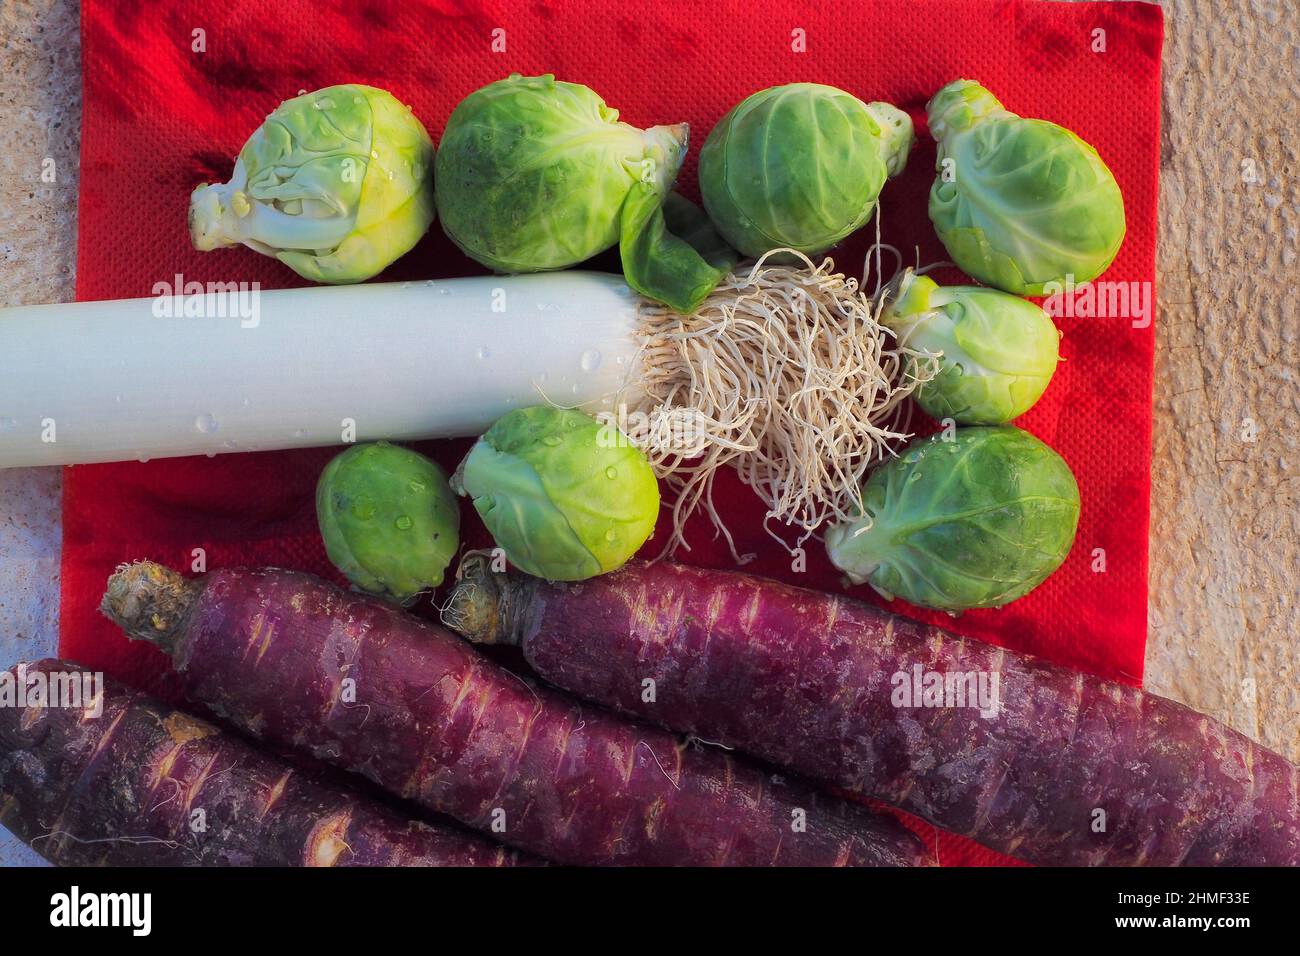 Rosenkohl, Lauch und alte Karotten mit weinroter Färbung, Gemüse von oben, Draufsicht Stockfoto